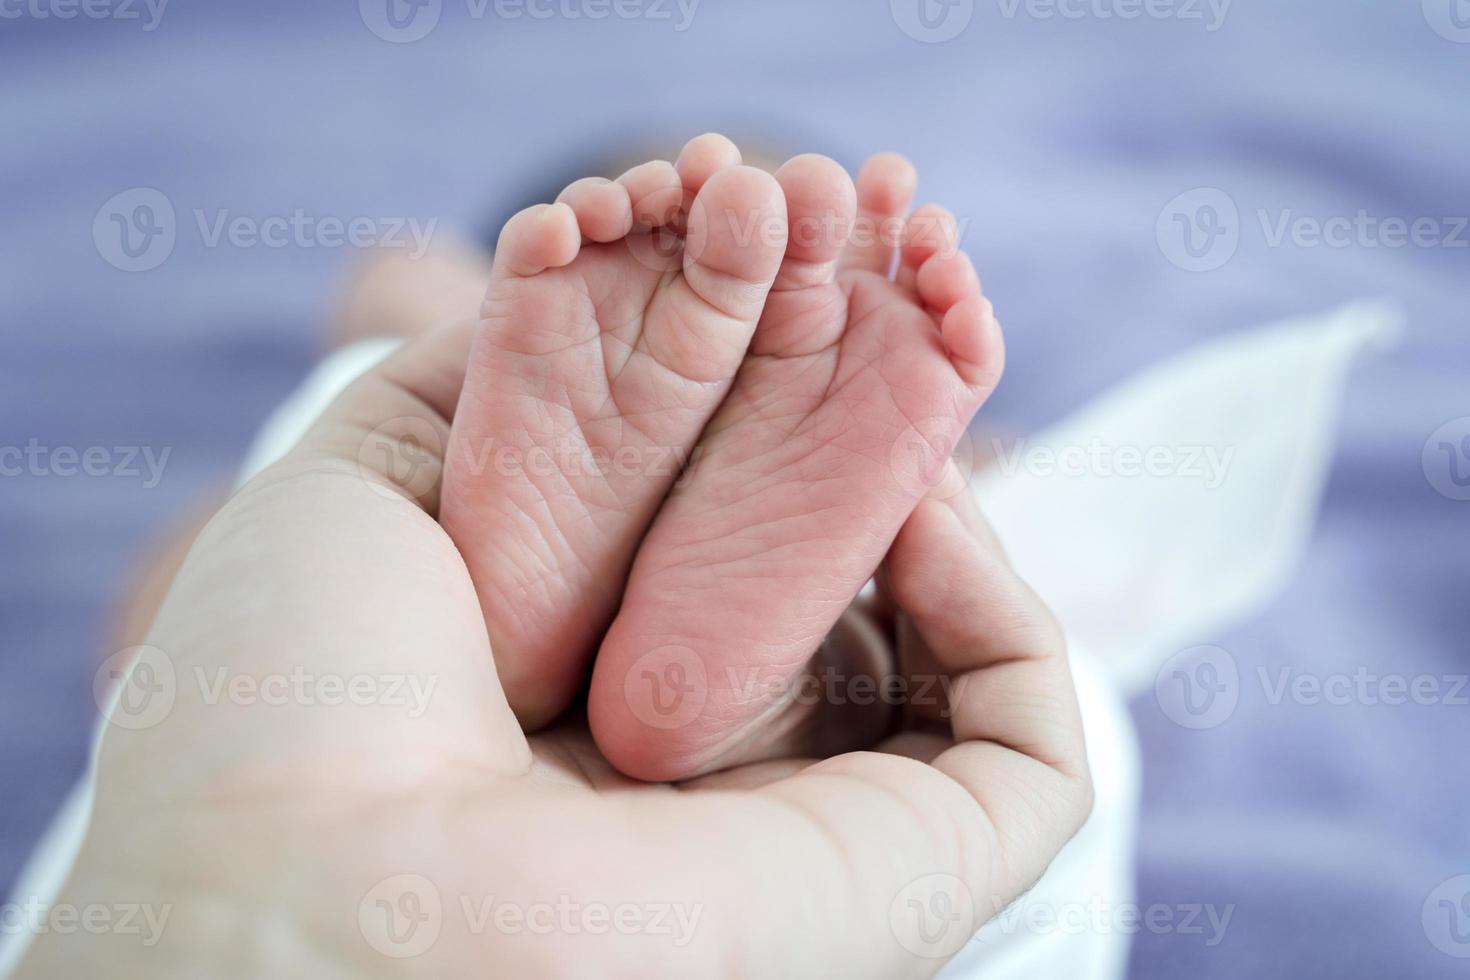 små nyfödda babyben i föräldrarnas händer. babyfot på faderns hand. foto